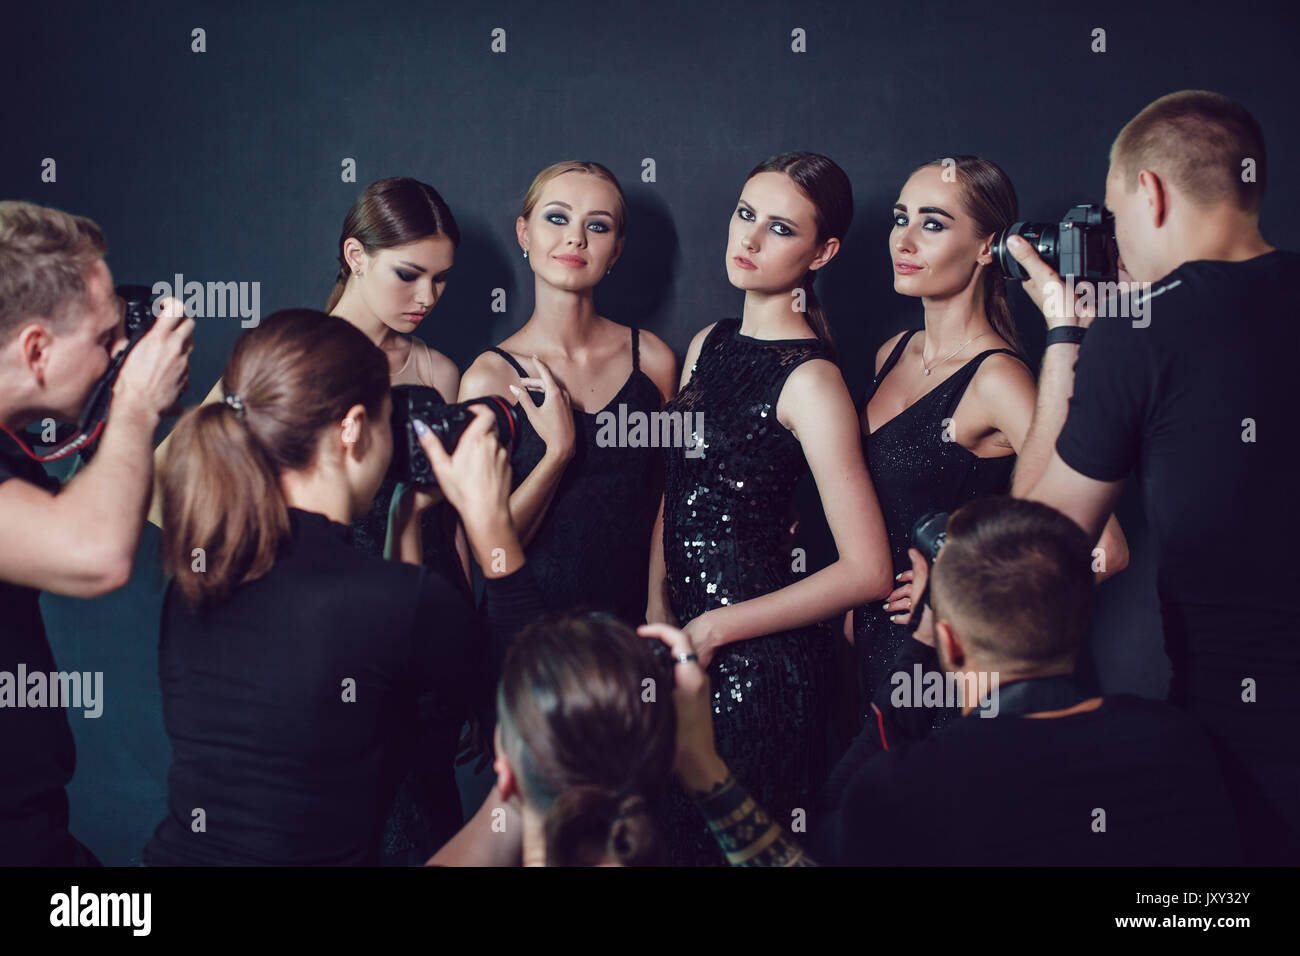 Fotografen paparazzi Fotos der Frauen in Cocktail Kleider auf dunklem Hintergrund. Stockfoto